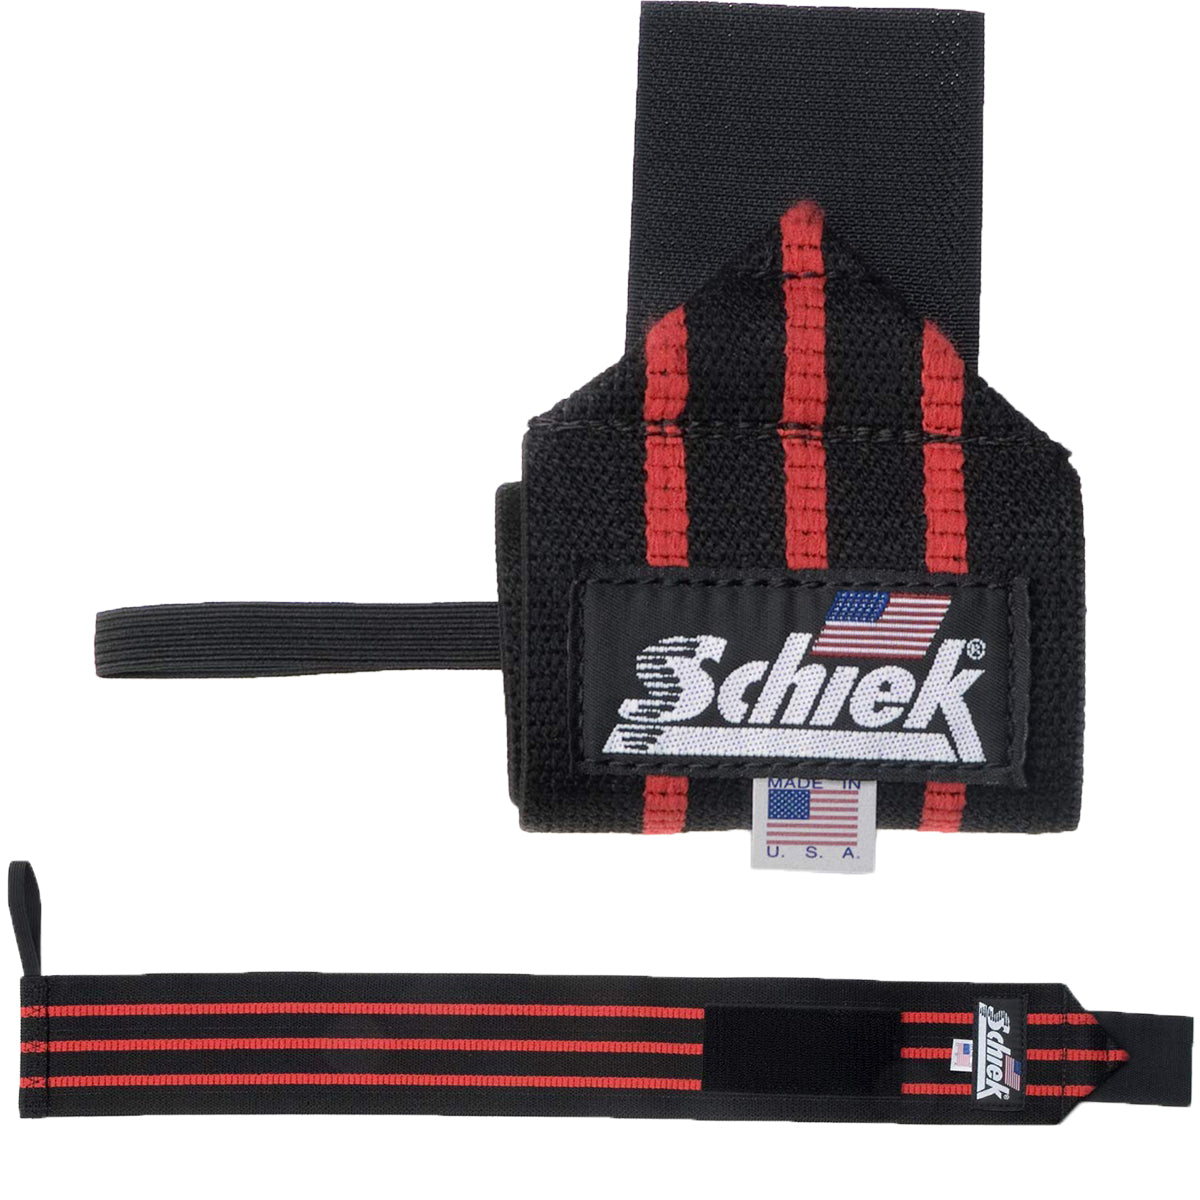 Schiek Sports Model 1112 Heavy Duty 12" Wrist Wraps - Black/Red Schiek Sports